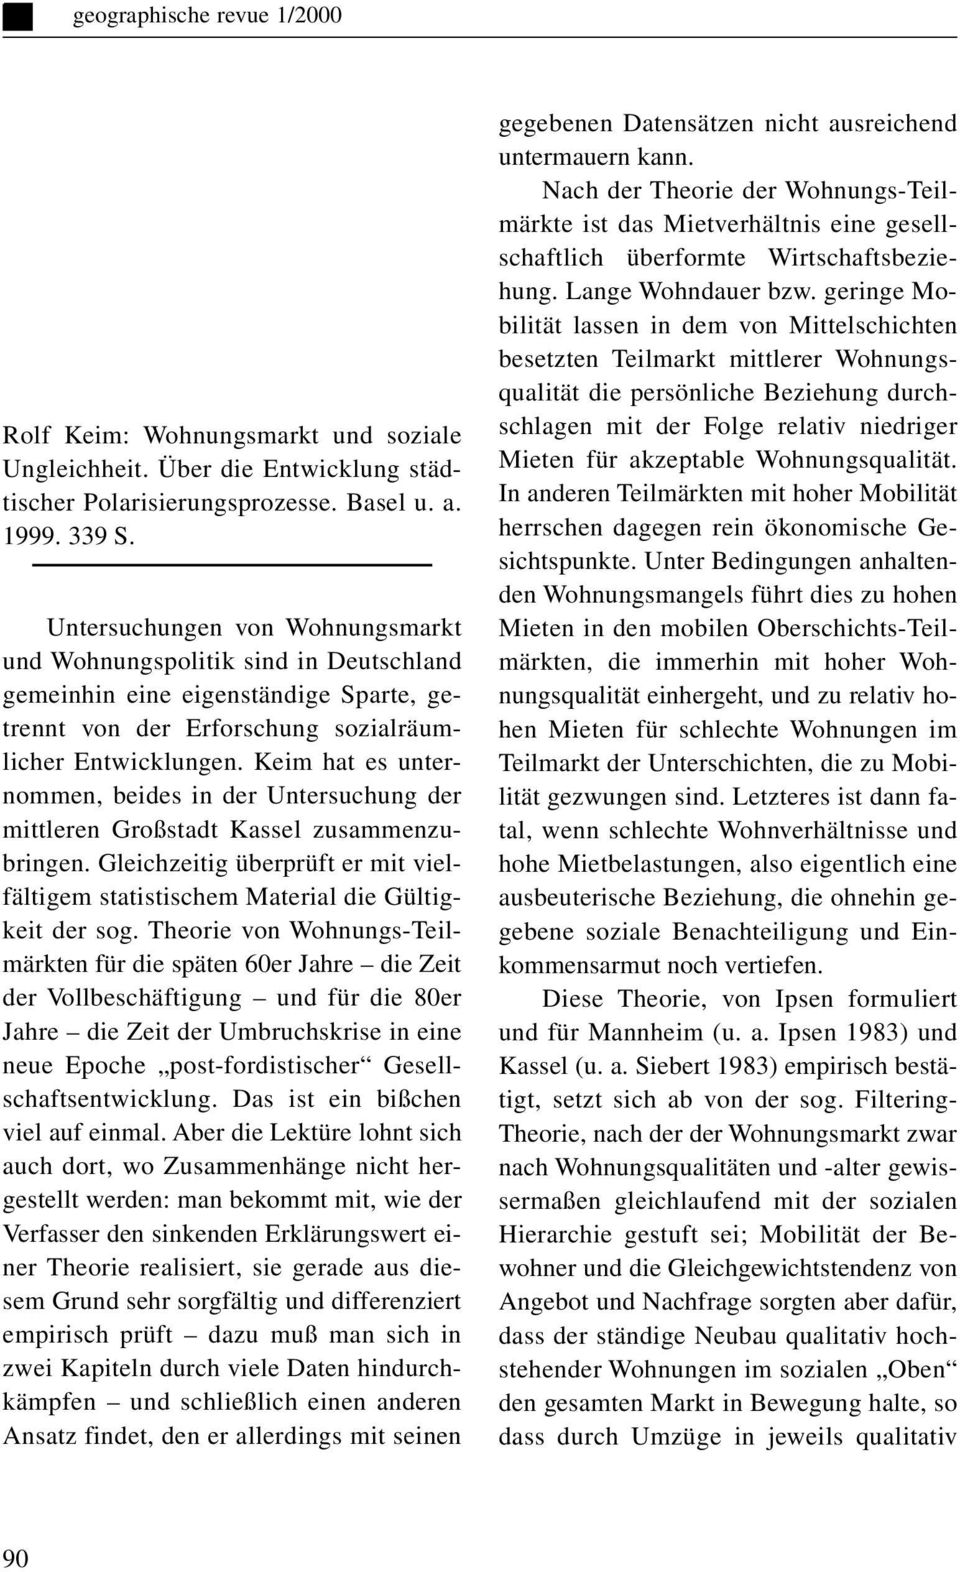 Keim hat es unternommen, beides in der Untersuchung der mittleren Großstadt Kassel zusammenzubringen. Gleichzeitig überprüft er mit vielfältigem statistischem Material die Gültigkeit der sog.